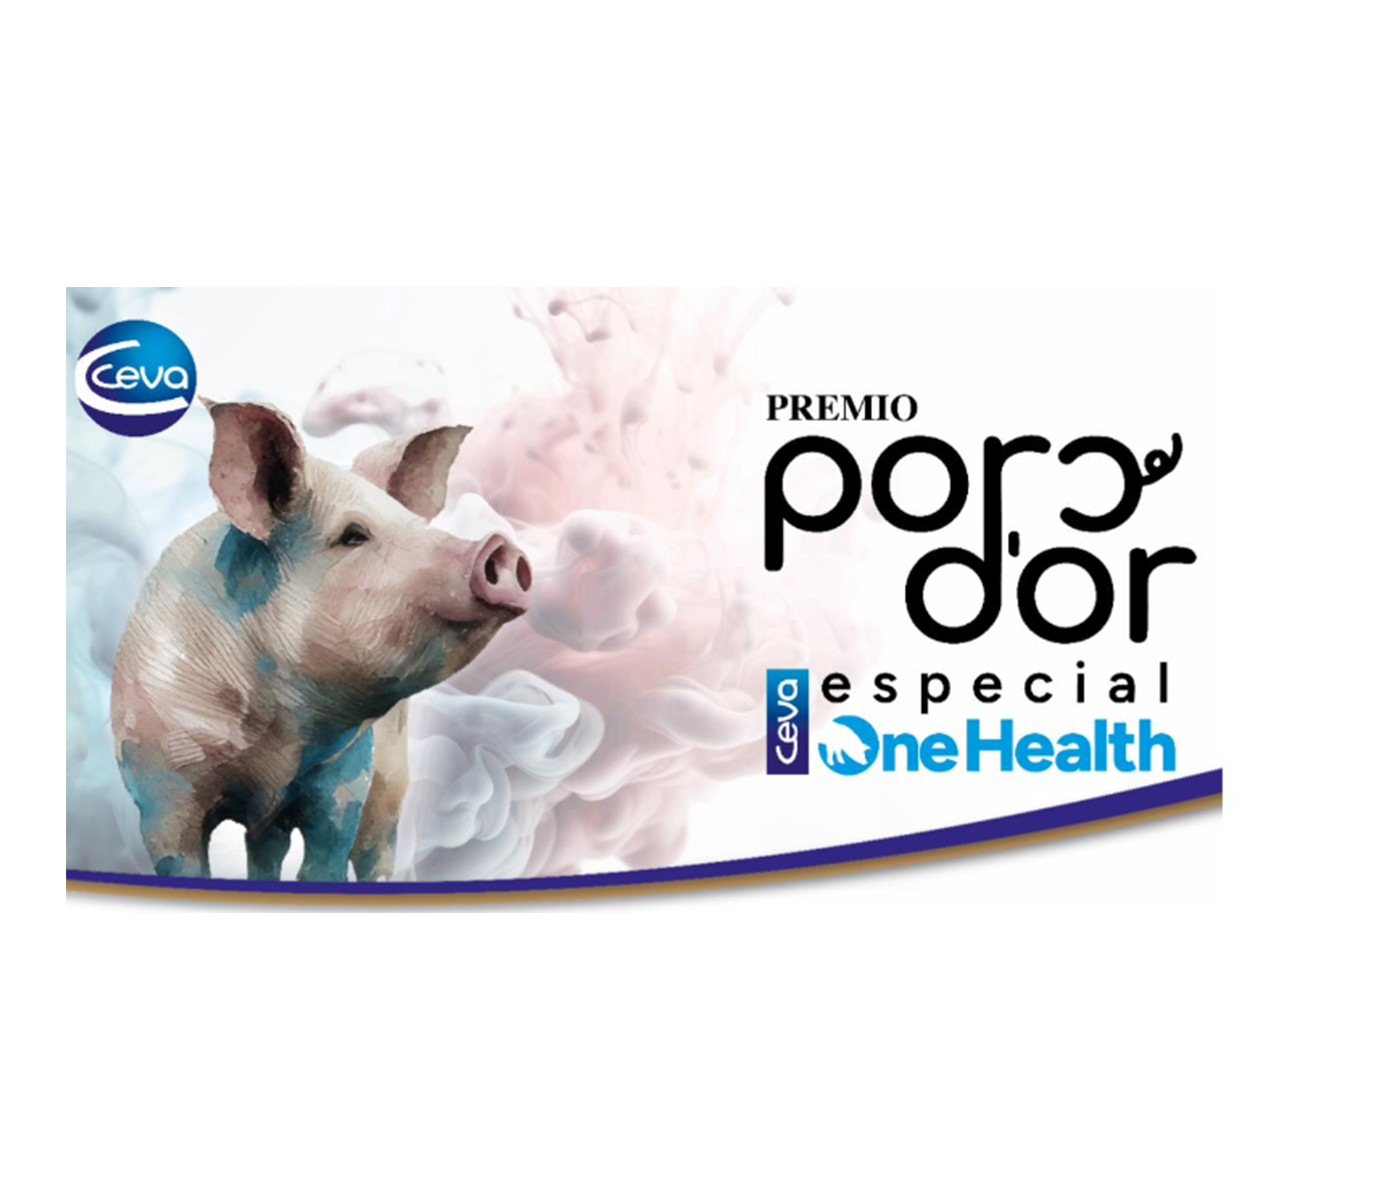 Ceva abre la convocatoria a veterinarios y ganaderos para optar al Premio Porc d’Or Especial One Health de Capa Blanca